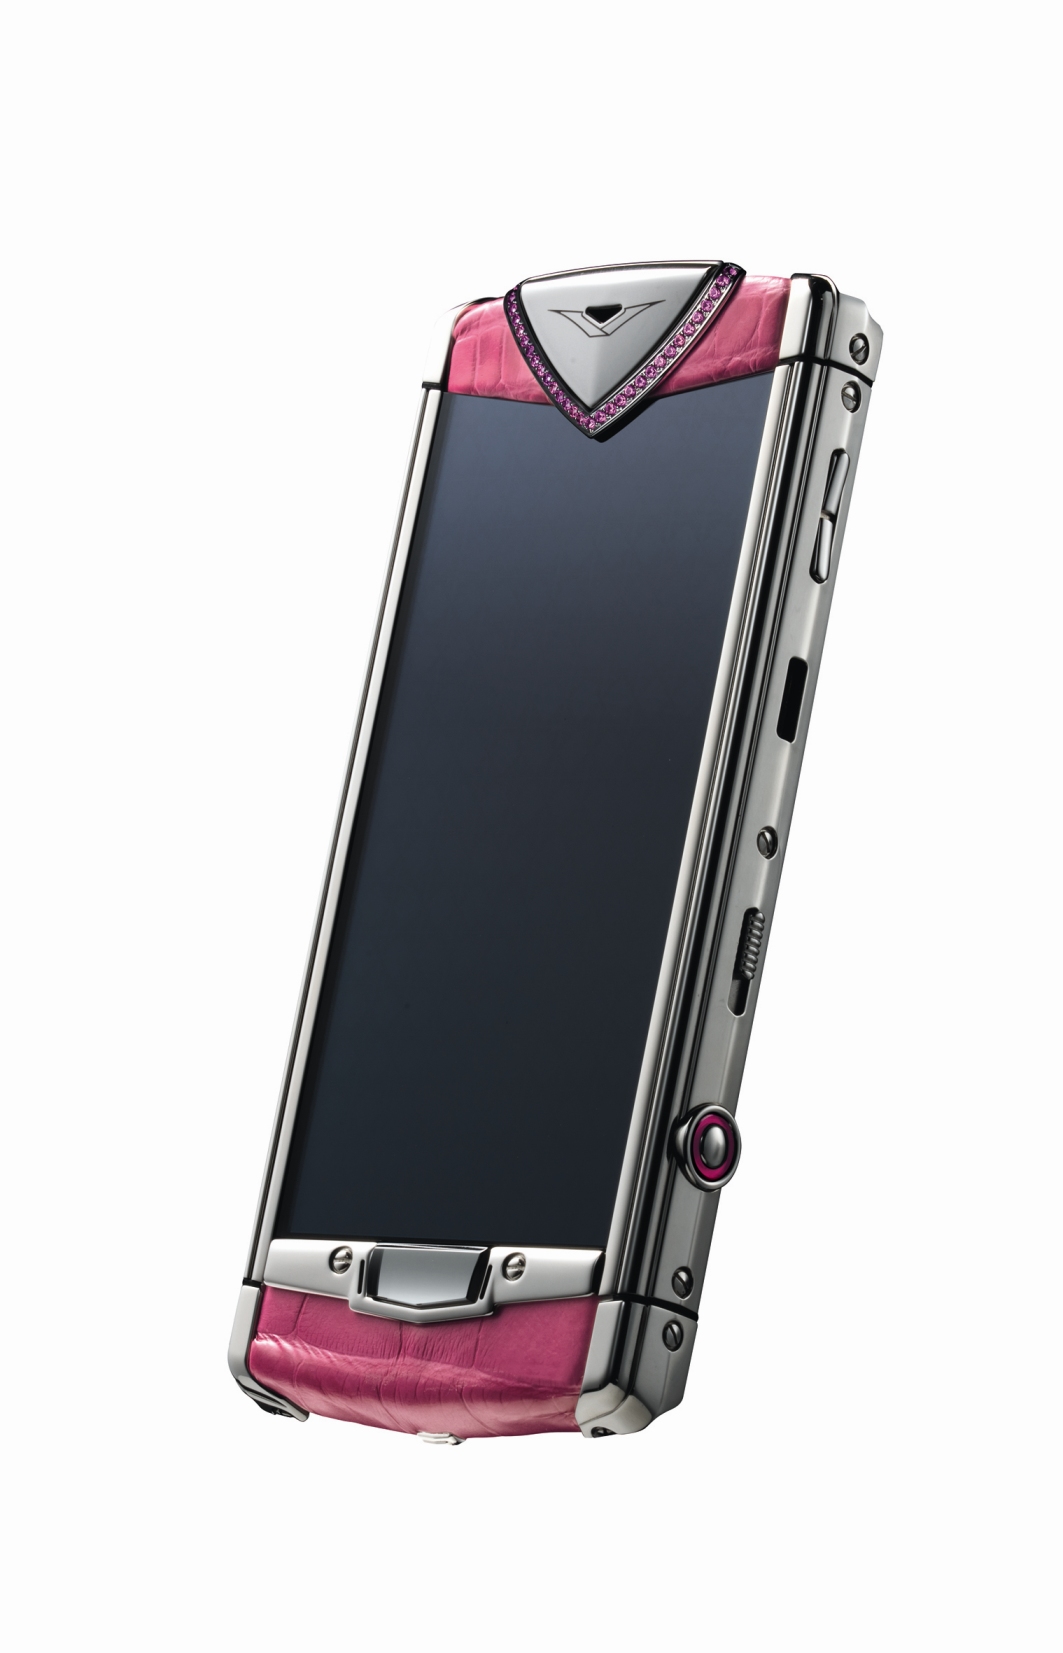  Vertu تصنع هواتف أنيقة للجنس اللطيف 3.4-Pink-7661-3